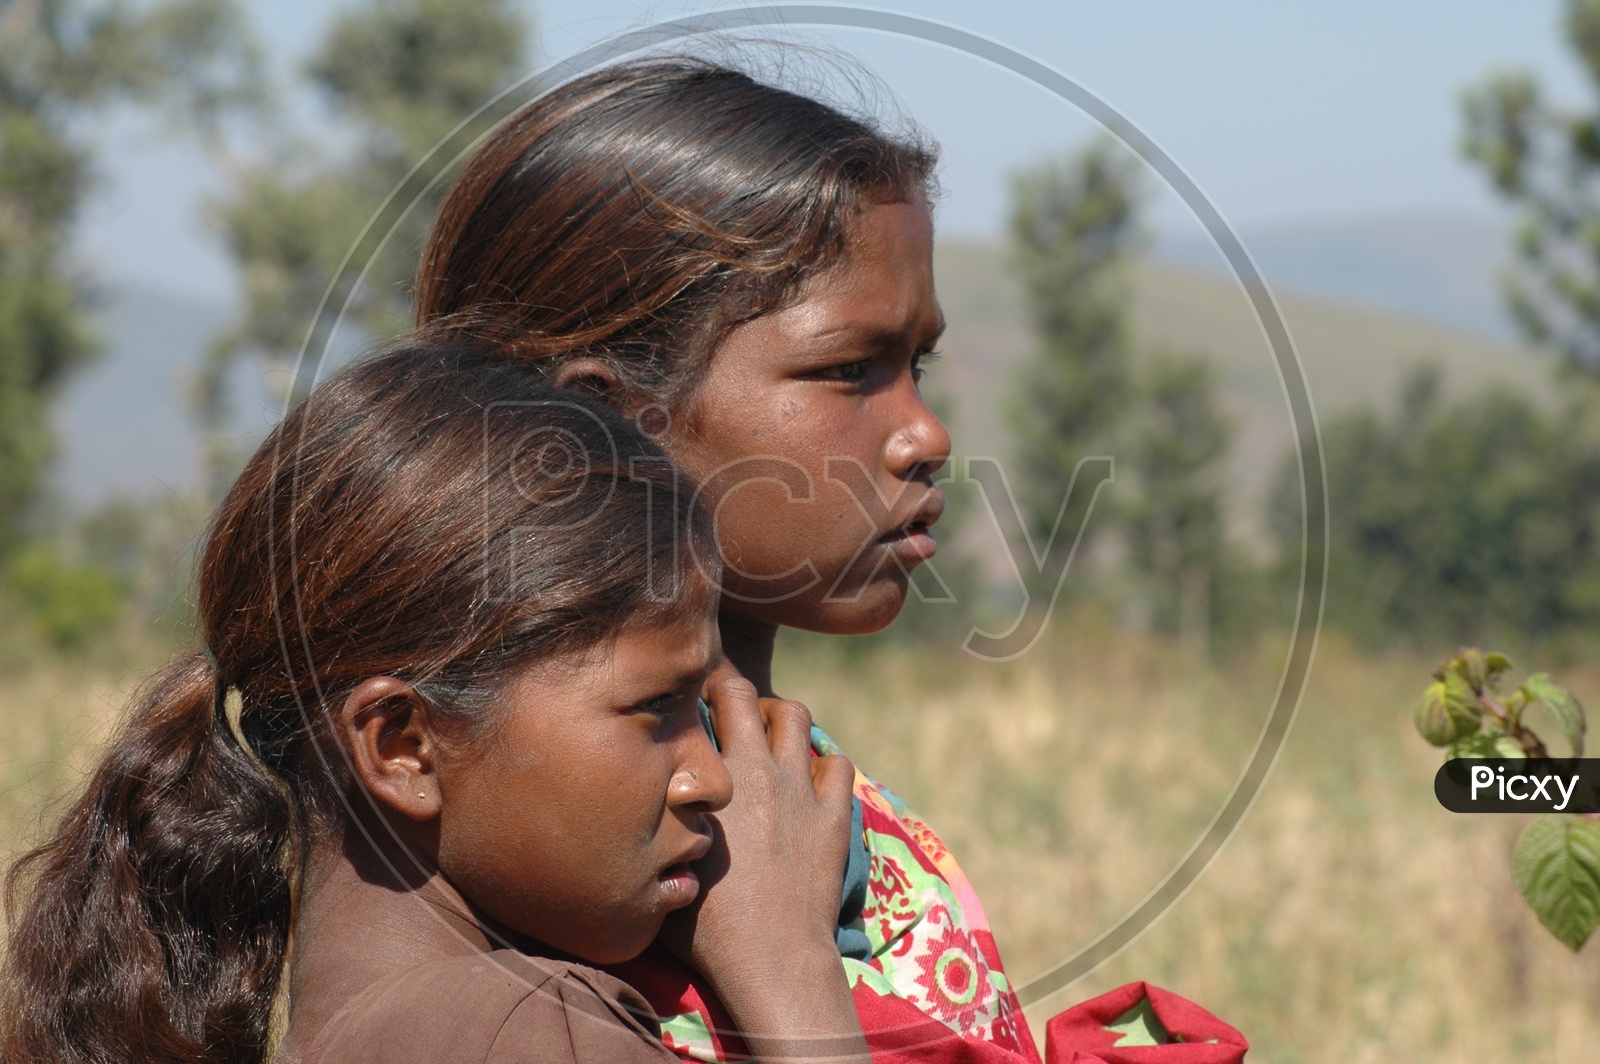 Children In Tribal Villages